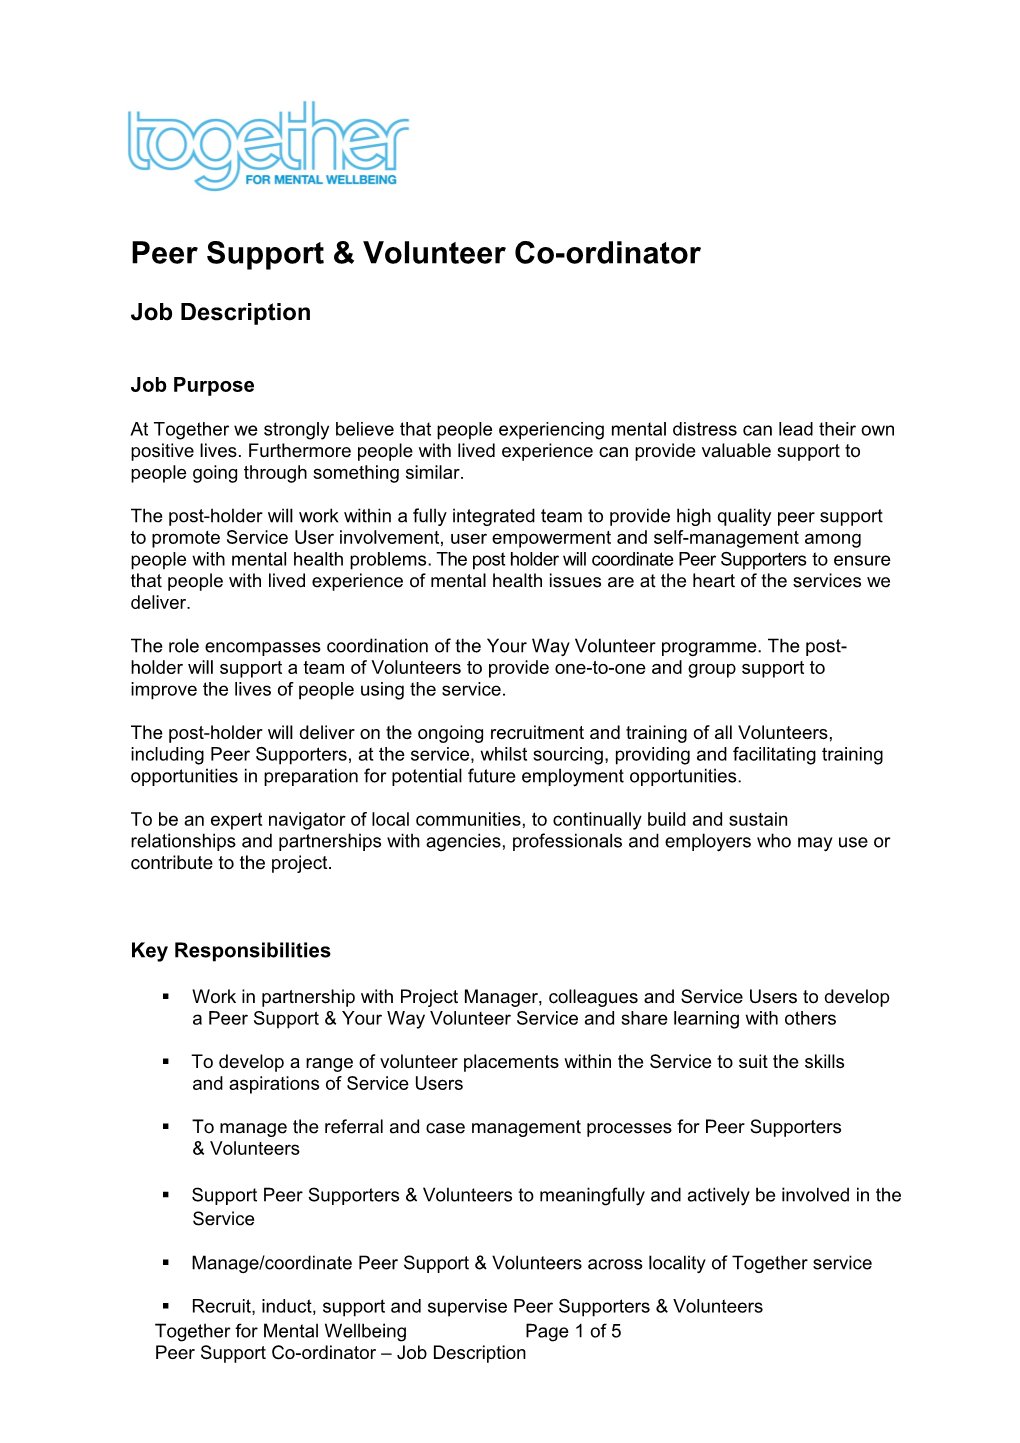 Peer Support & Volunteer Co-Ordinator